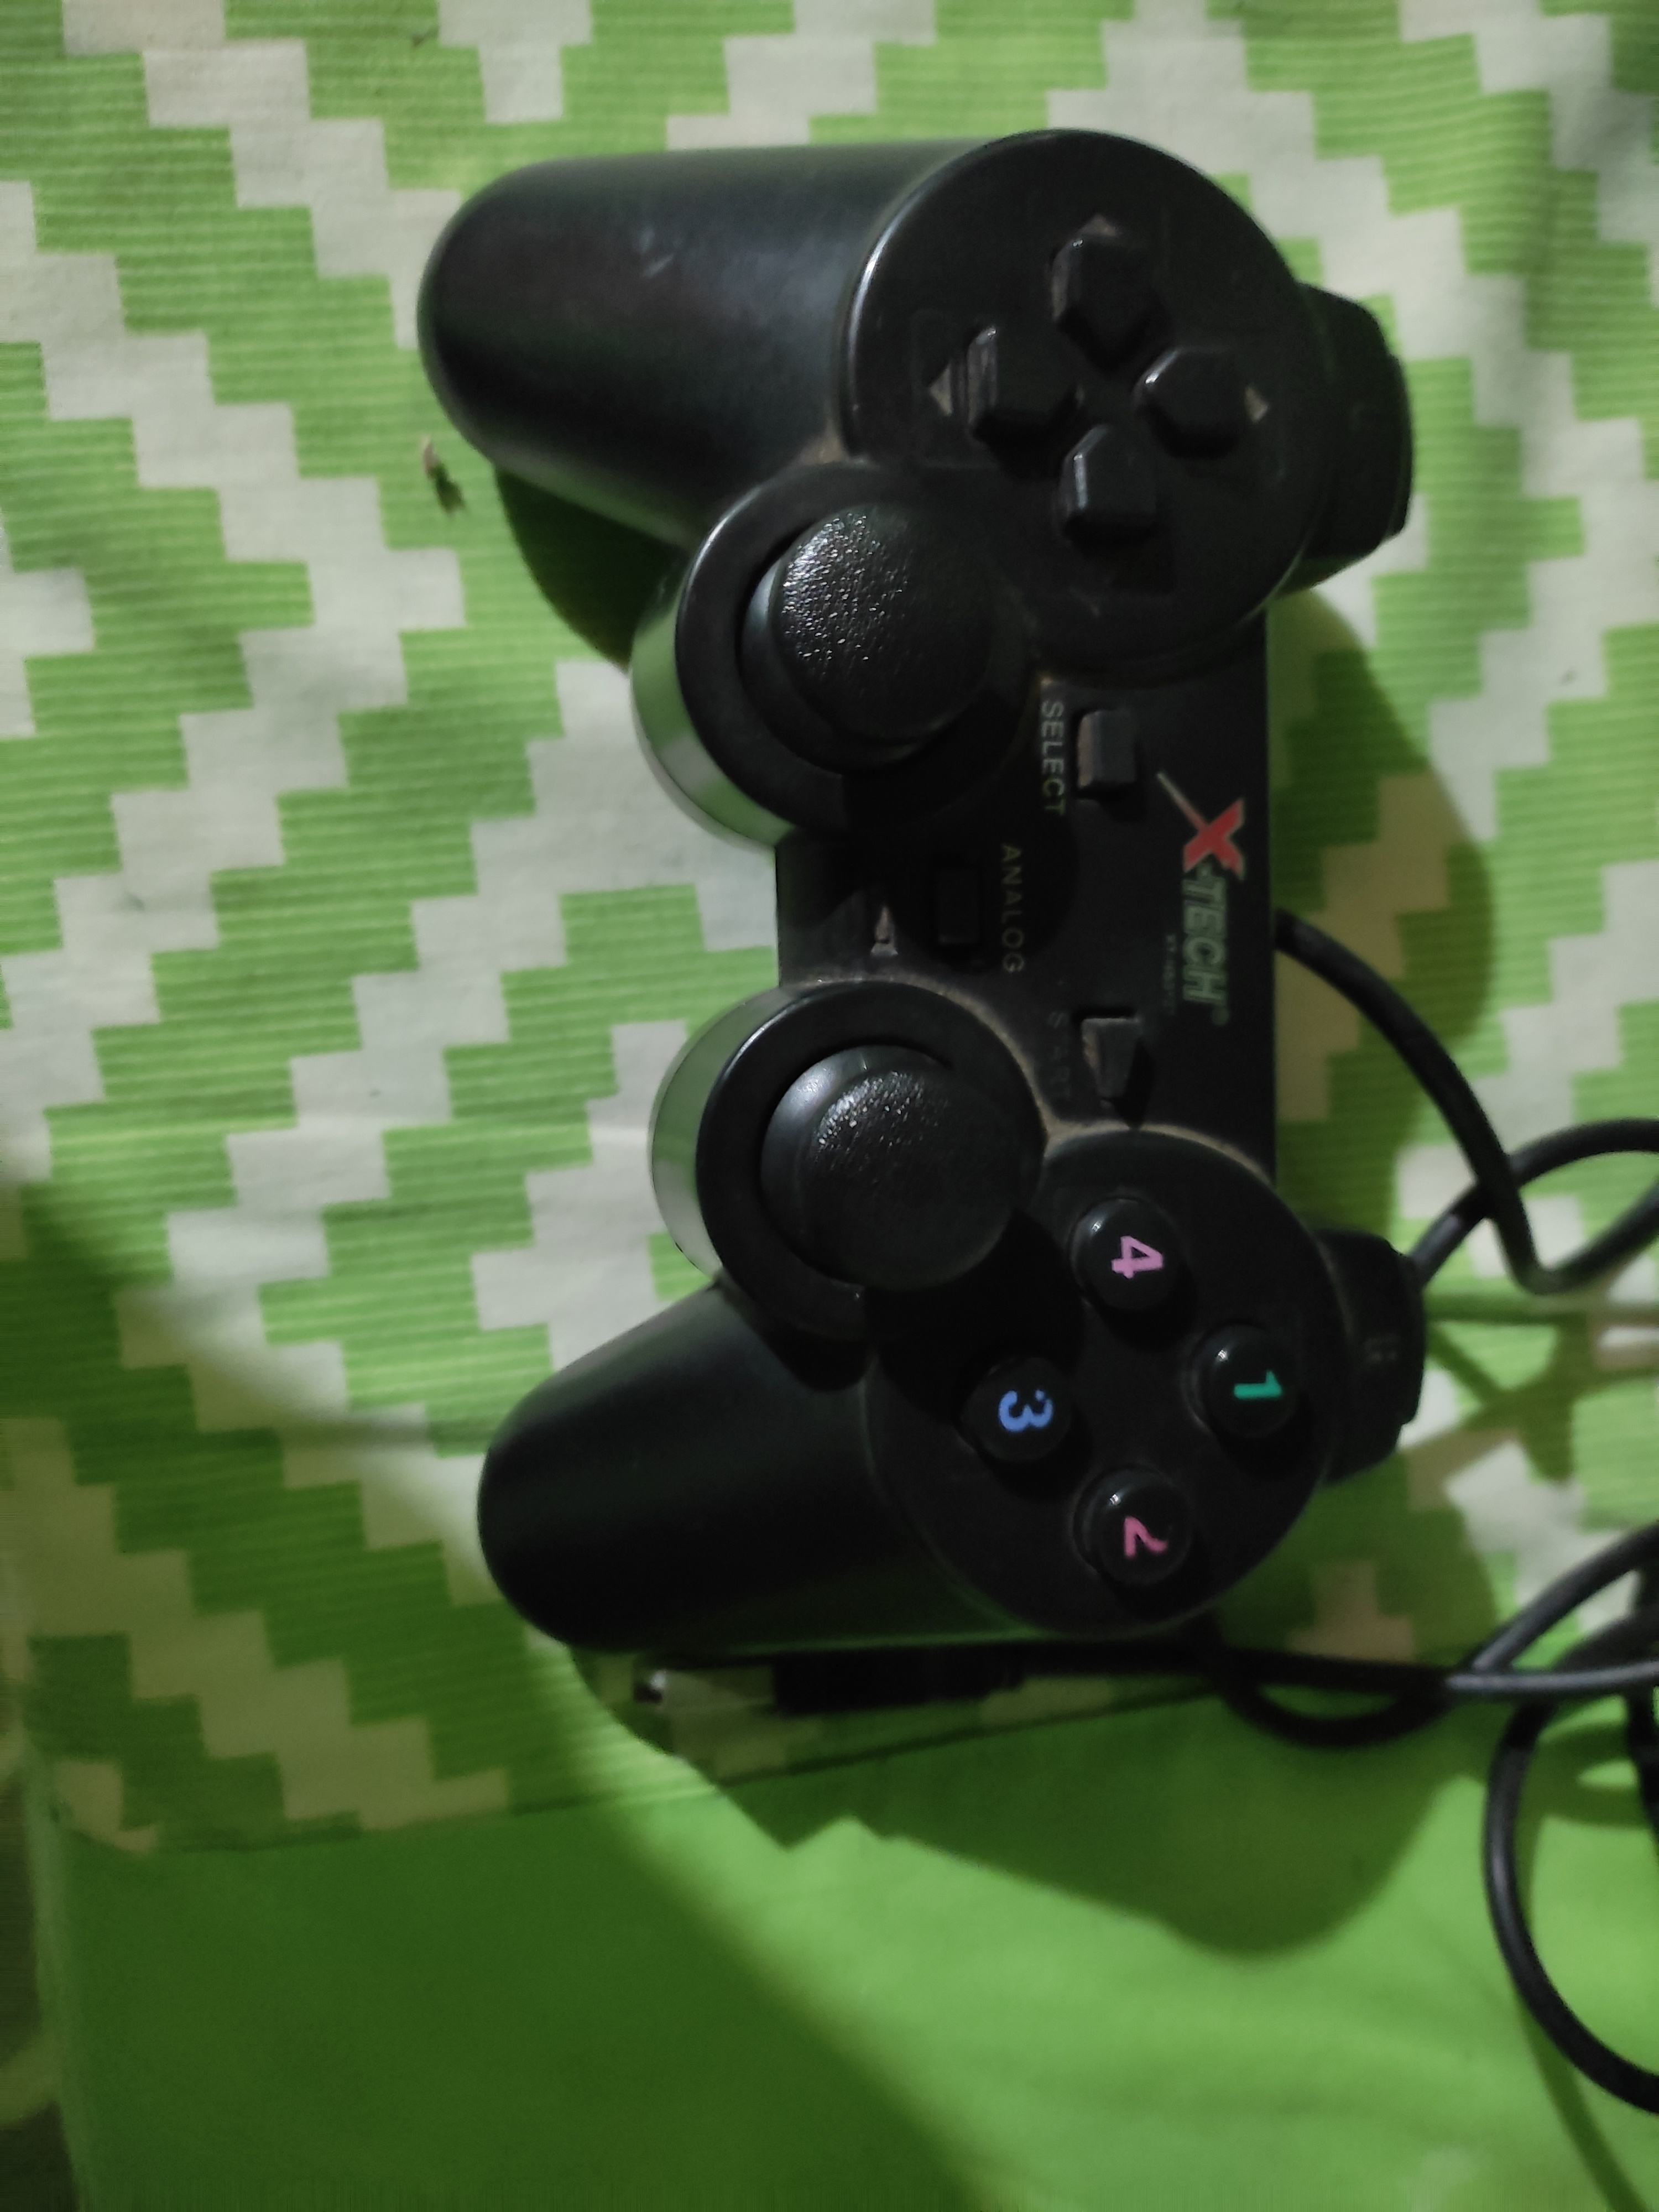 Modelos de Mandos PlayStation 2+ - 1604285589486, PDF, Juegos de consolas